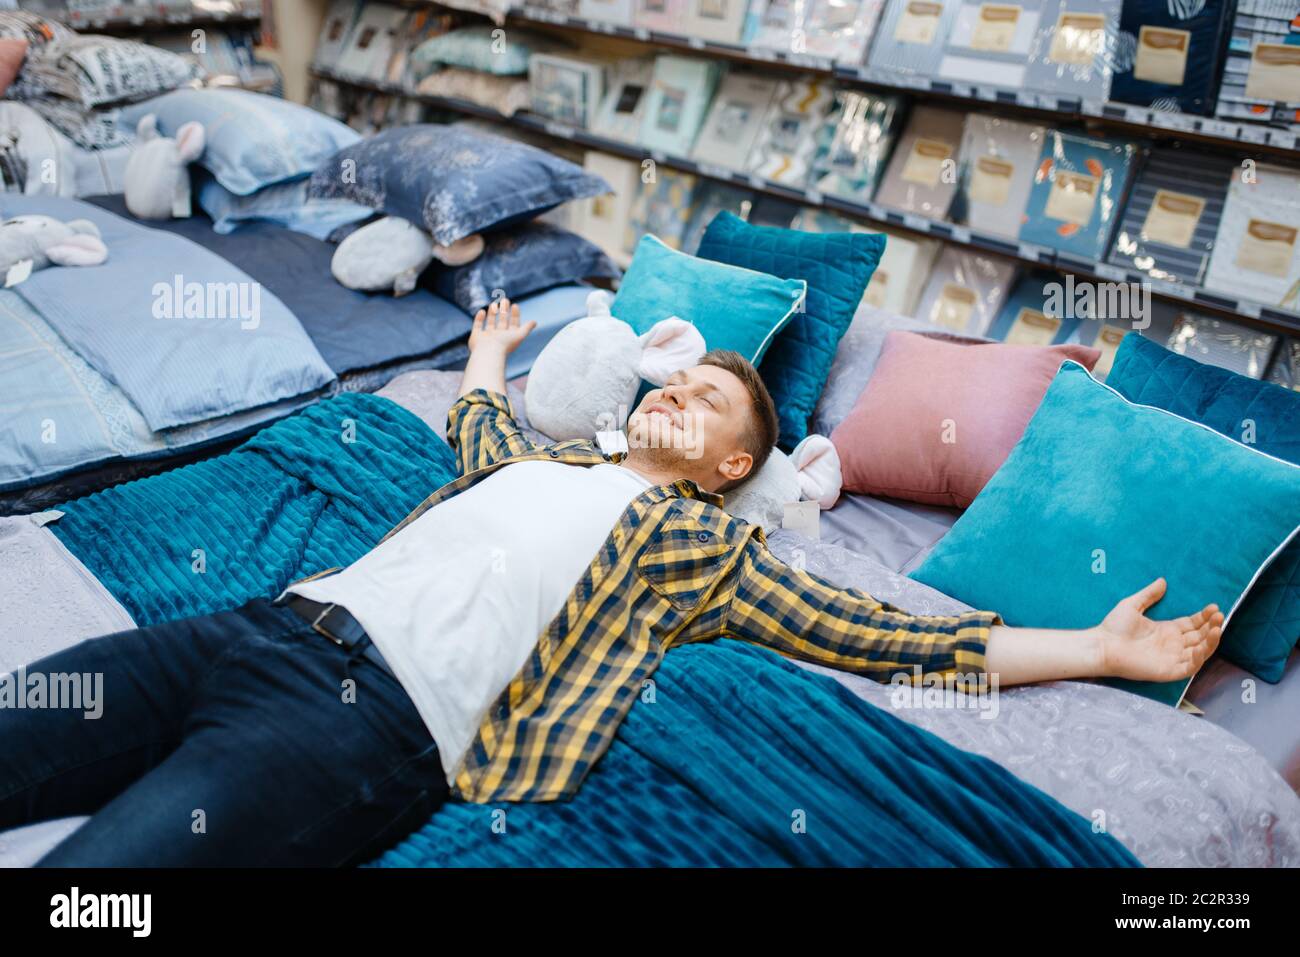 Hombre joven acostado en la cama en la tienda de ropa de Hombre persona que compra bienes de casa en el mercado, hombre que duerme en la tienda Fotografía de stock -